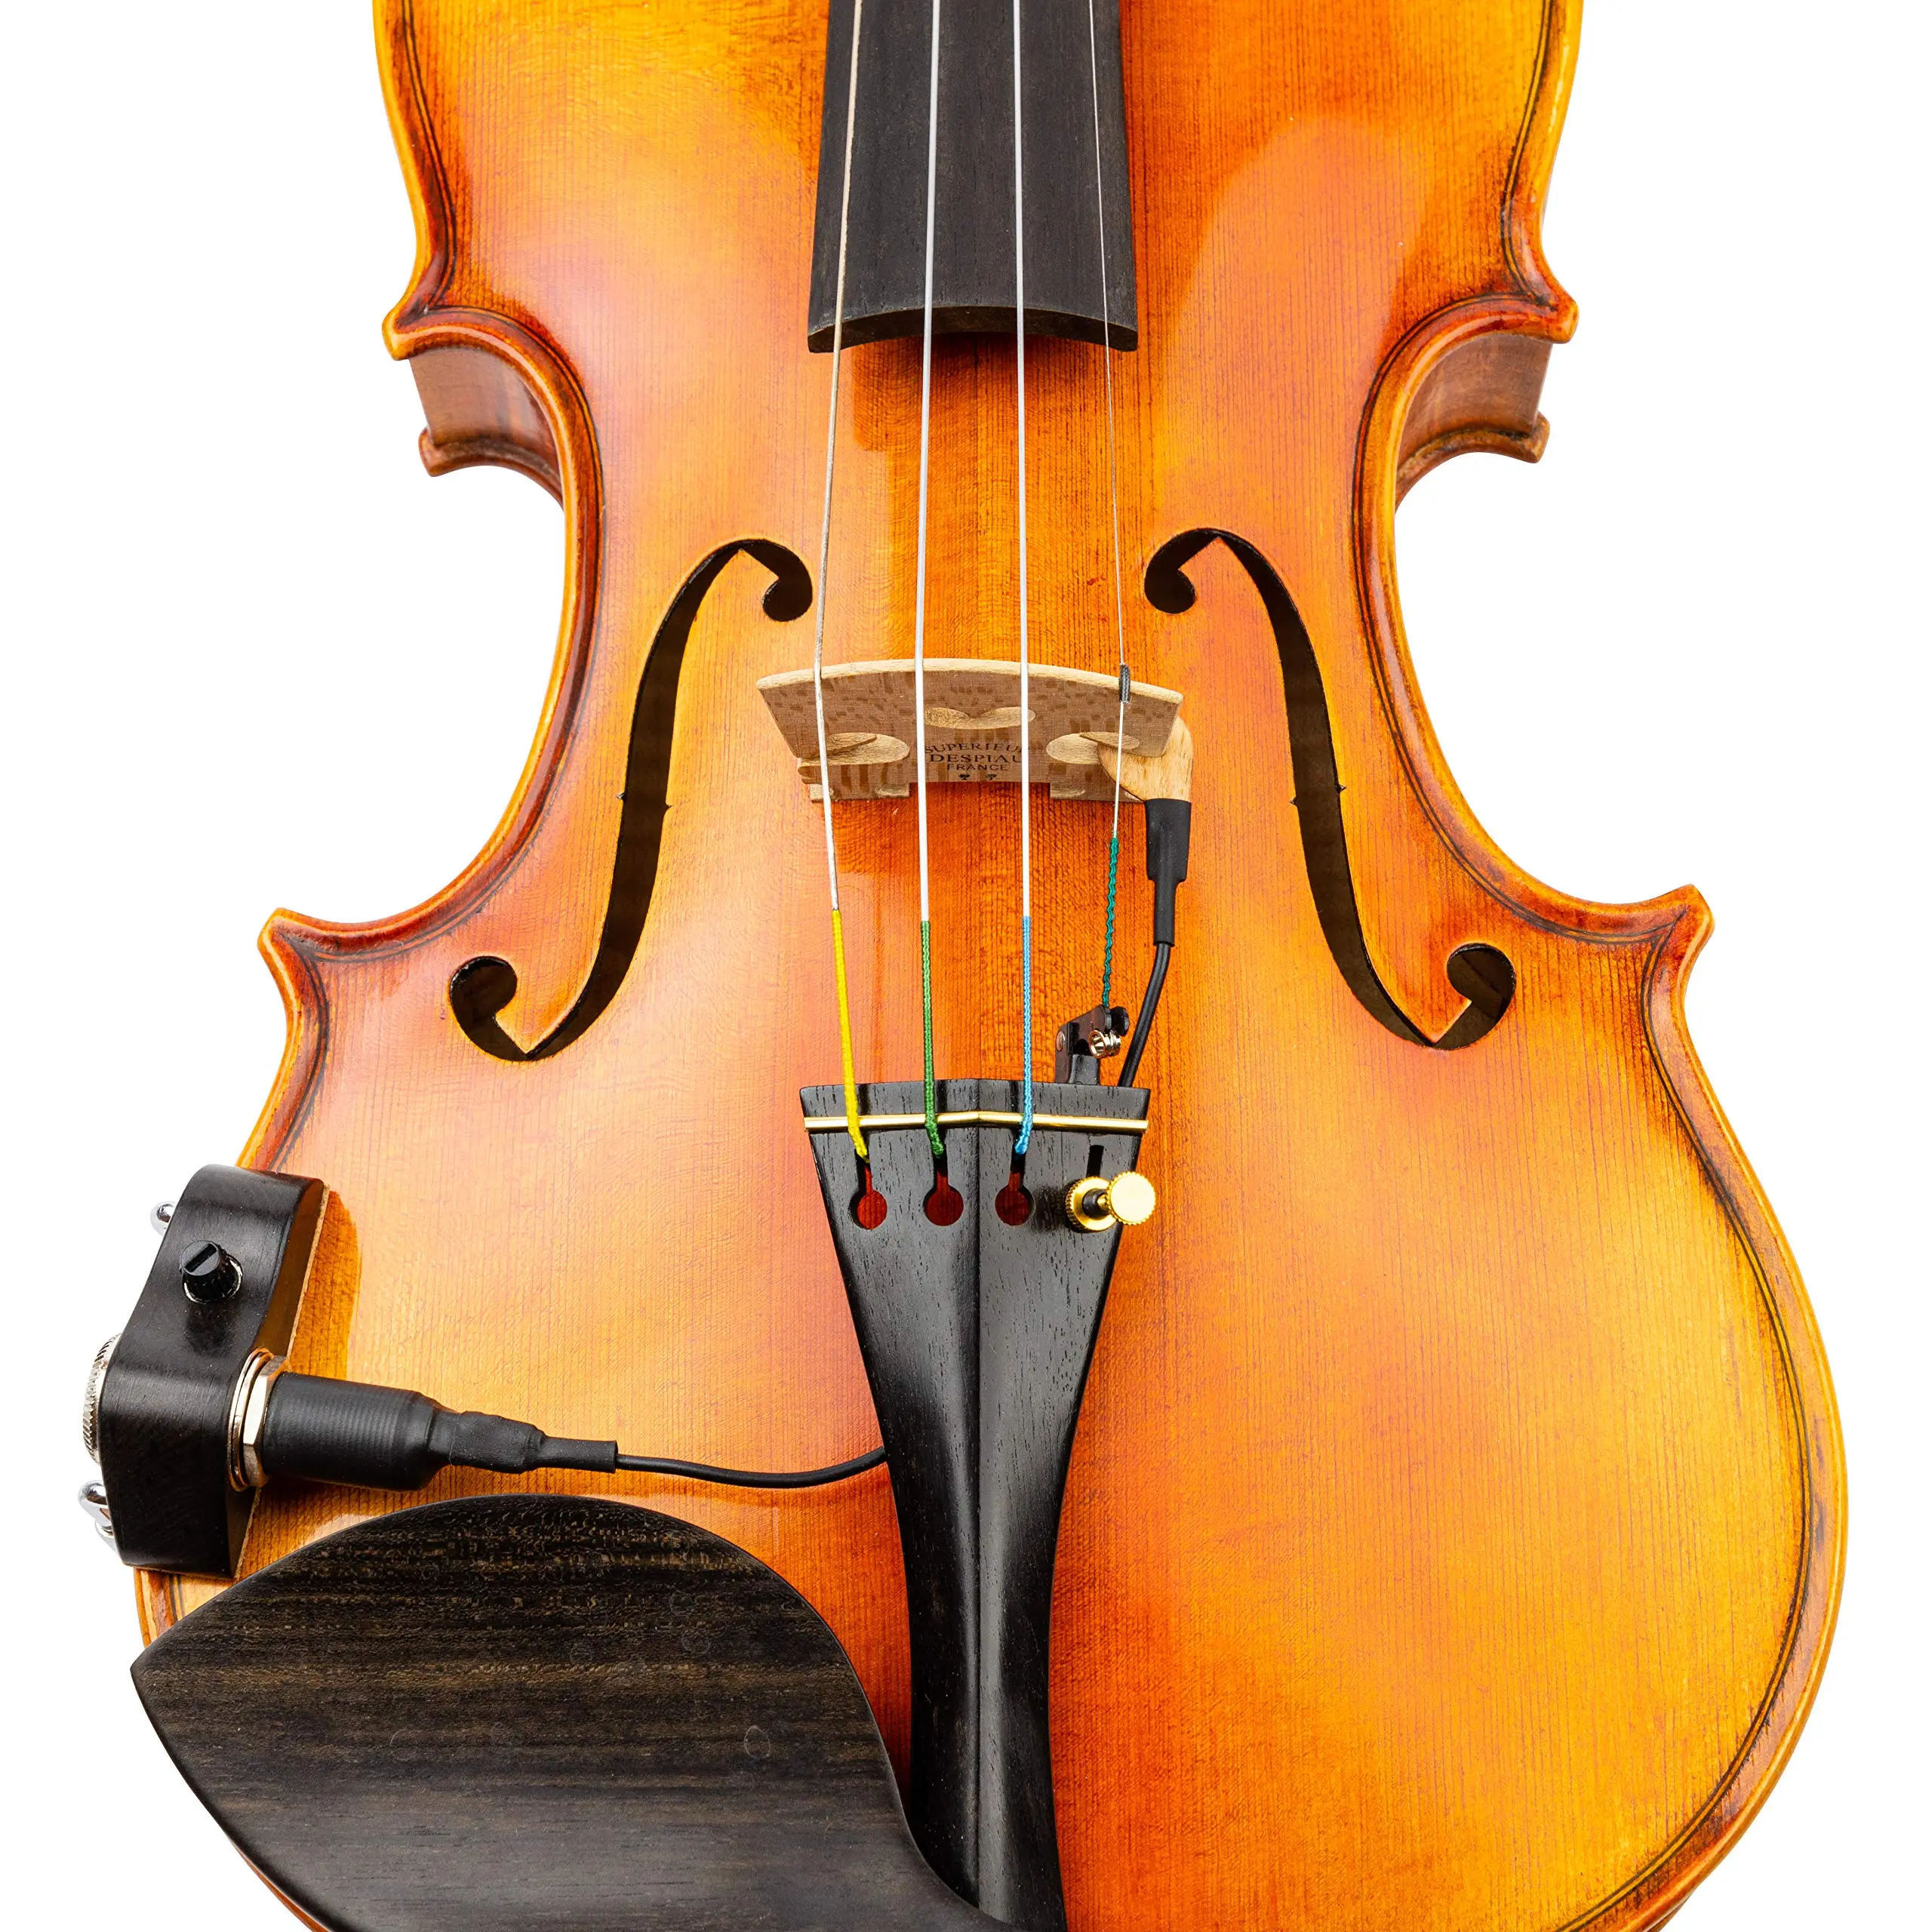 kna pickup violin - How do you install a KNA violin pickup